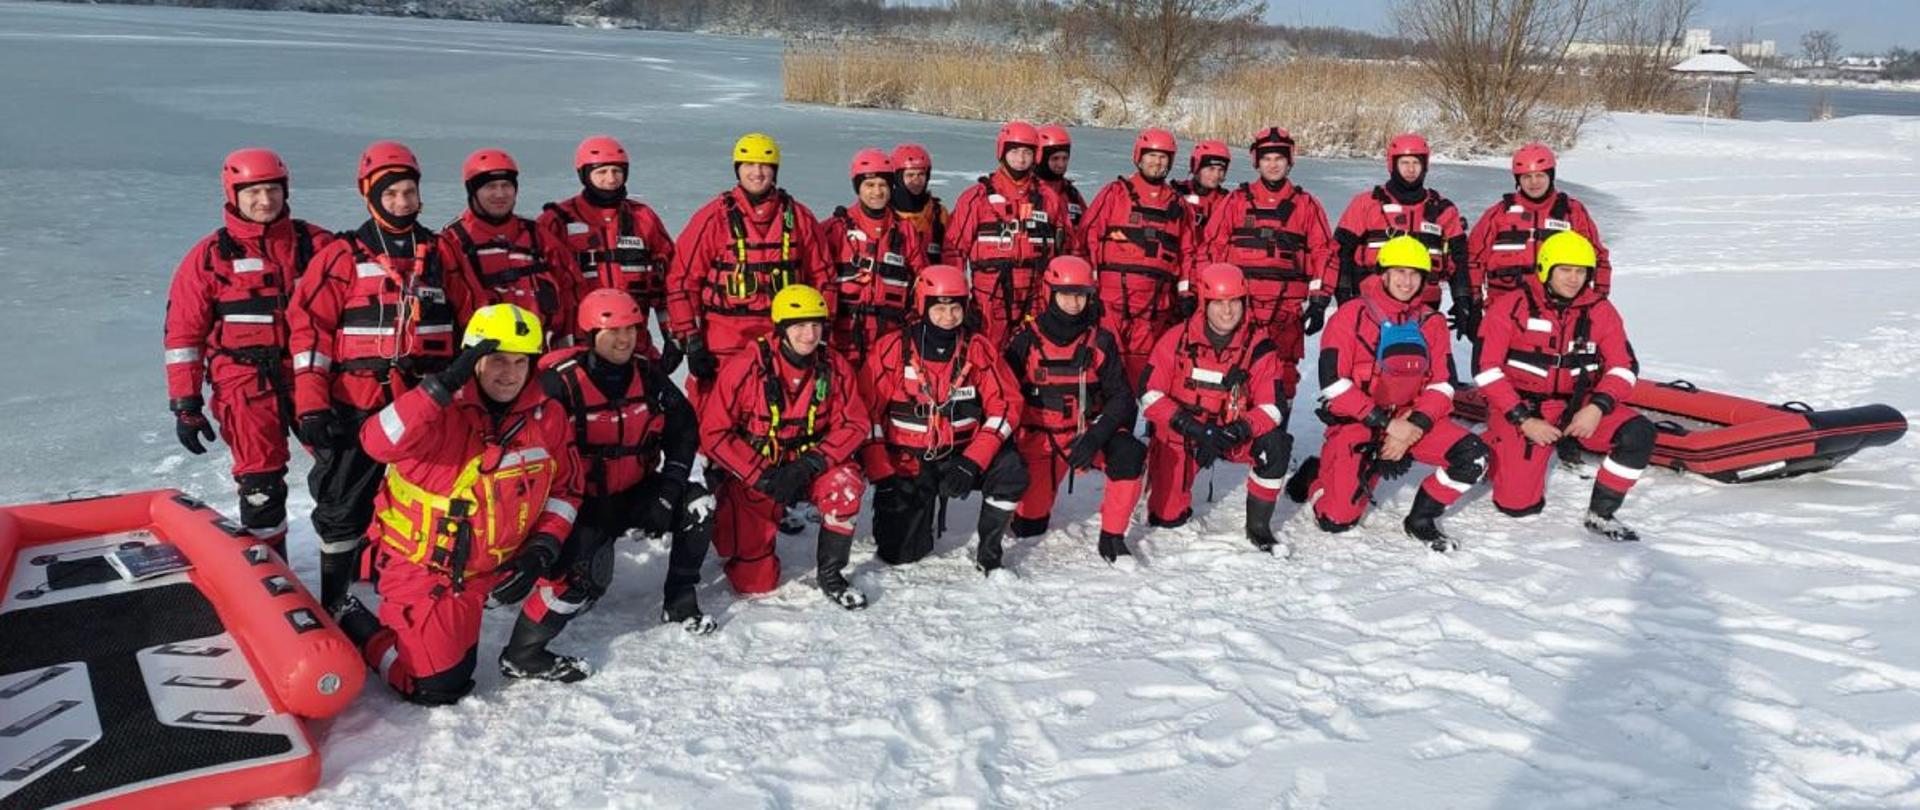 Strażacy Państwowej Straży Pożarnej w ubraniach wypornościowych i kaskach stoją na brzegu do wspólnego zdjęcia grupowego.